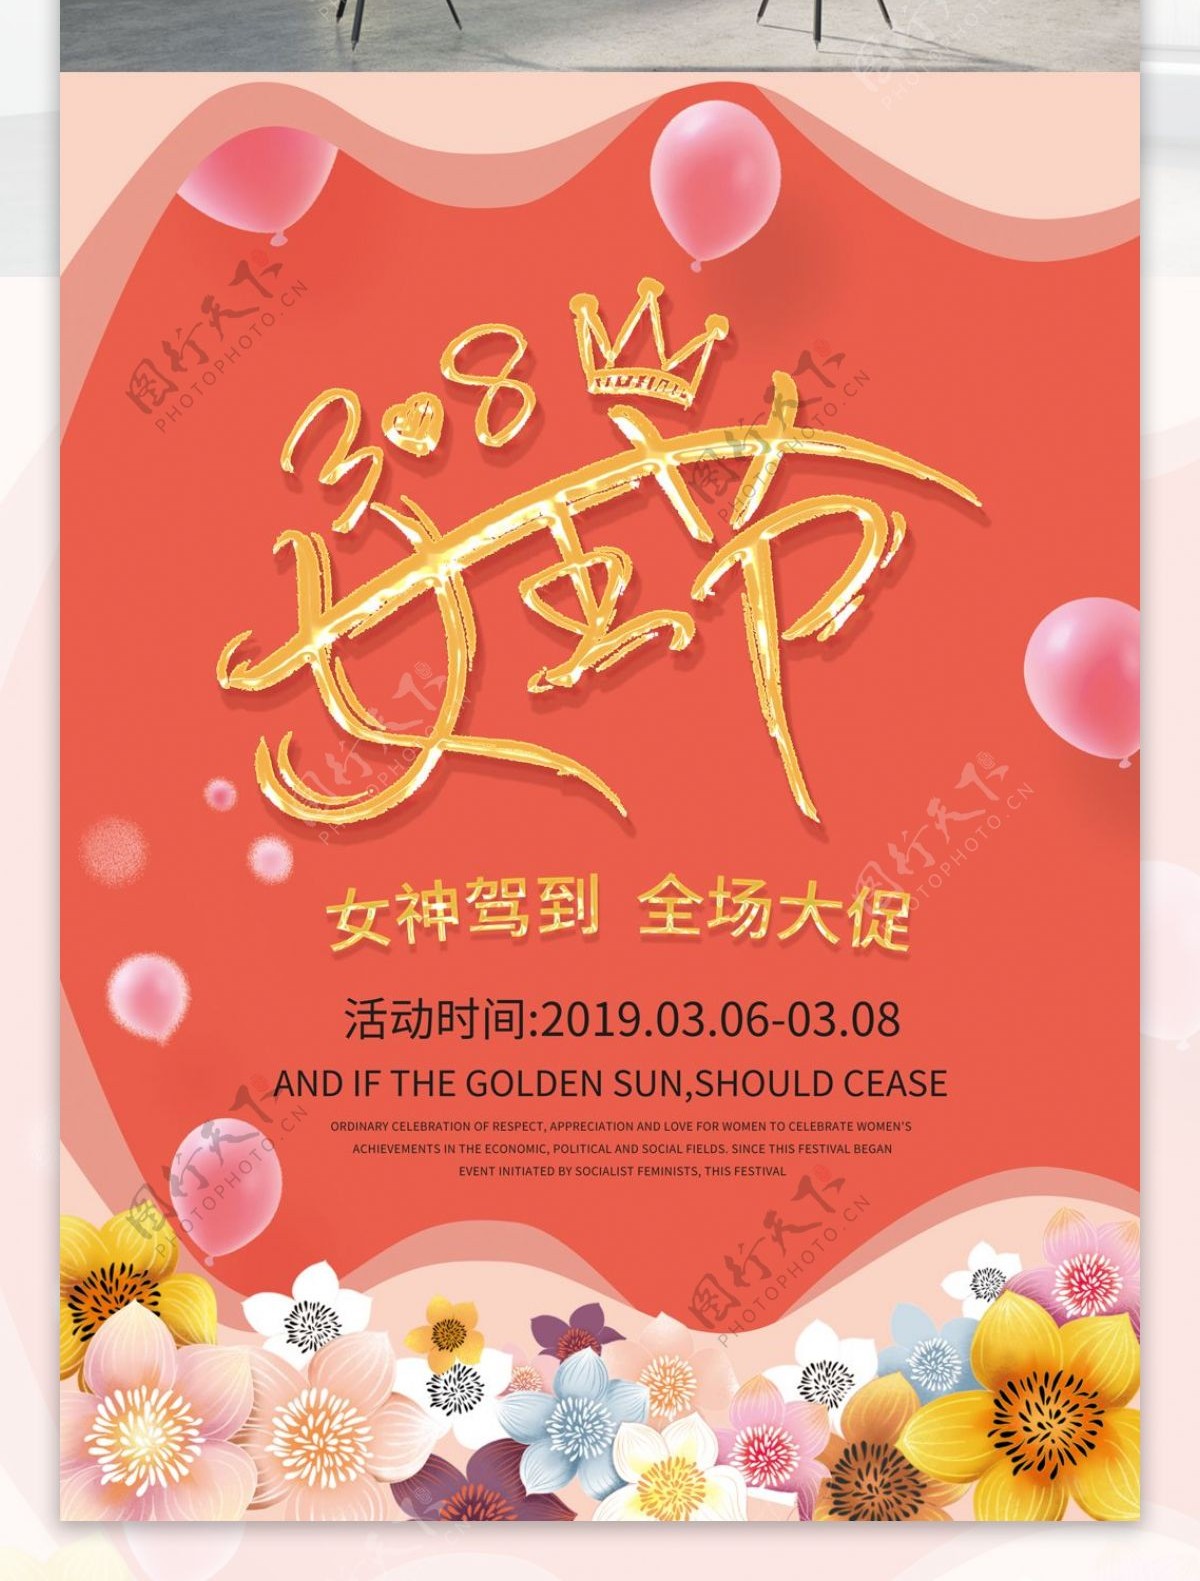 珊瑚橘38女王节商场活动节日促销海报